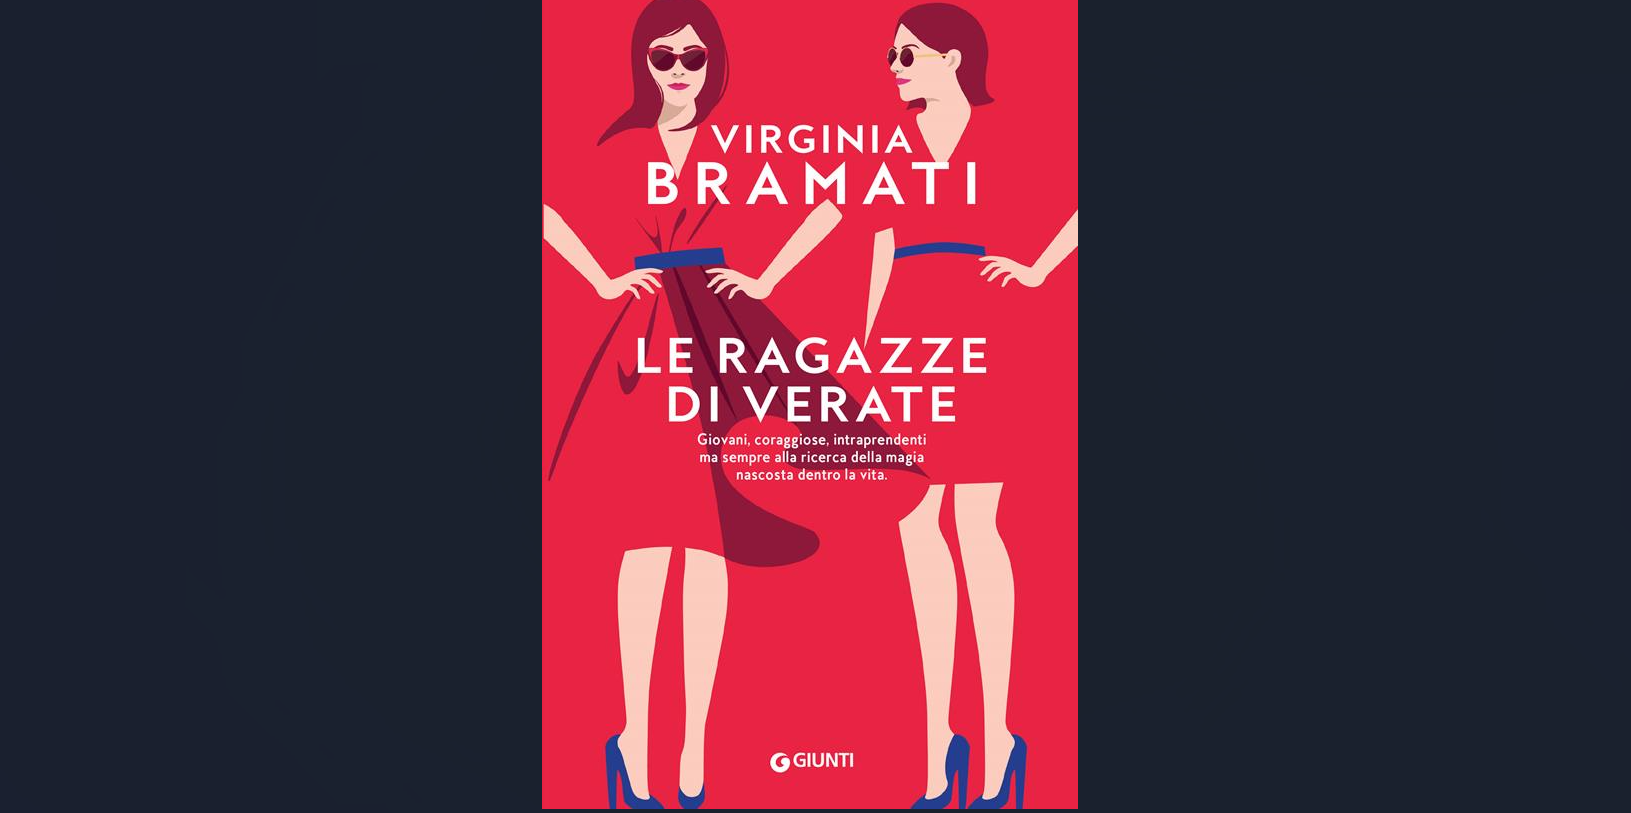 “Le ragazze di Verate”, in un unico volume tre romanzi d’amore della scrittrice Virginia Bramati